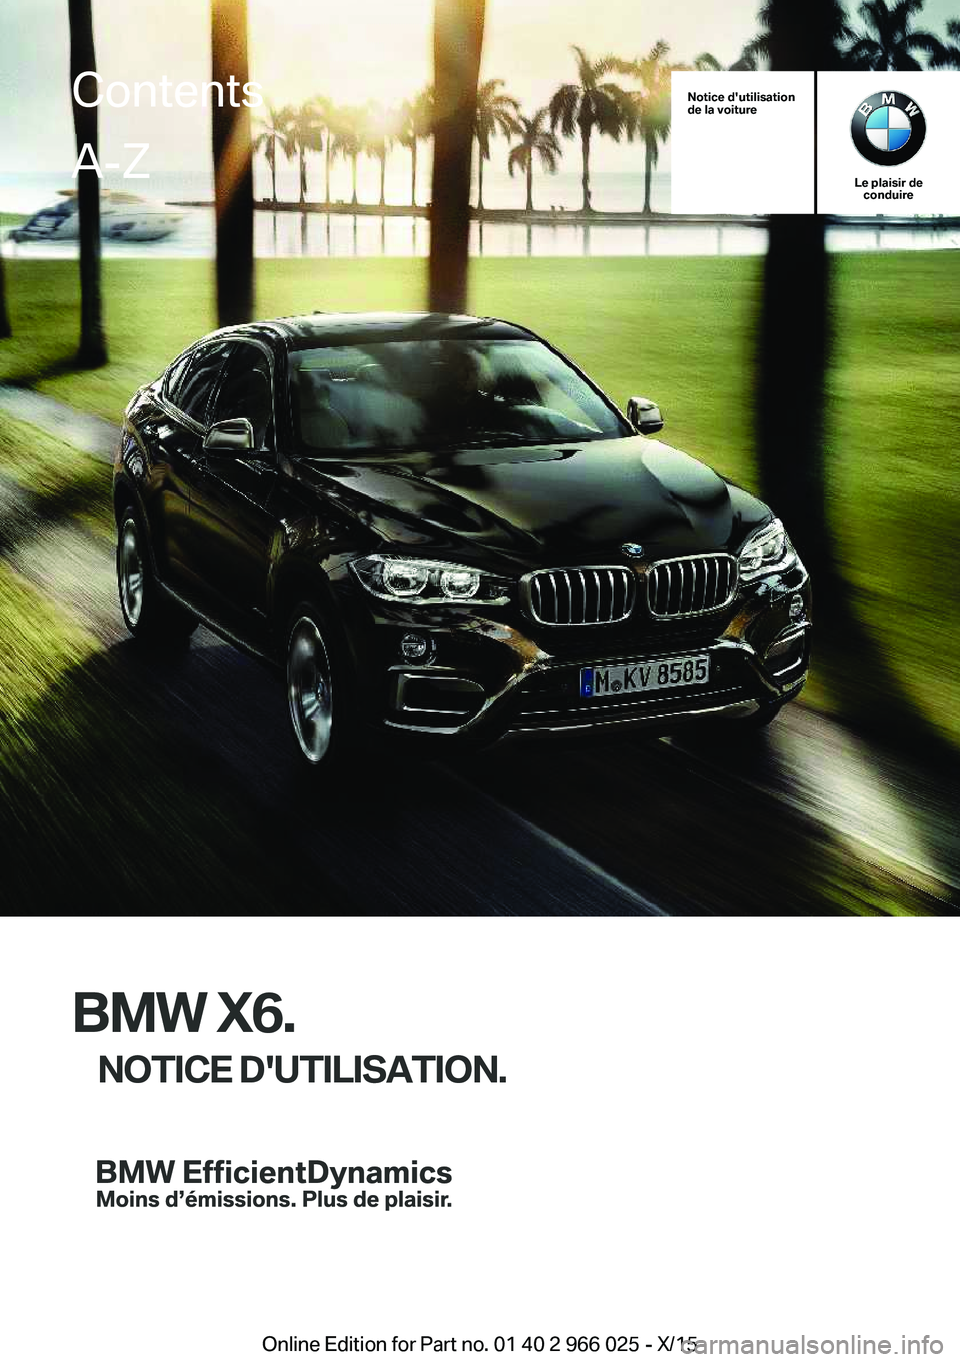 BMW X6 2016  Notices Demploi (in French) Notice d'utilisation
de la voiture
Le plaisir de conduire
BMW X6.
NOTICE D'UTILISATION.
ContentsA-Z
Online Edition for Part no. 01 40 2 966 025 - X/15   